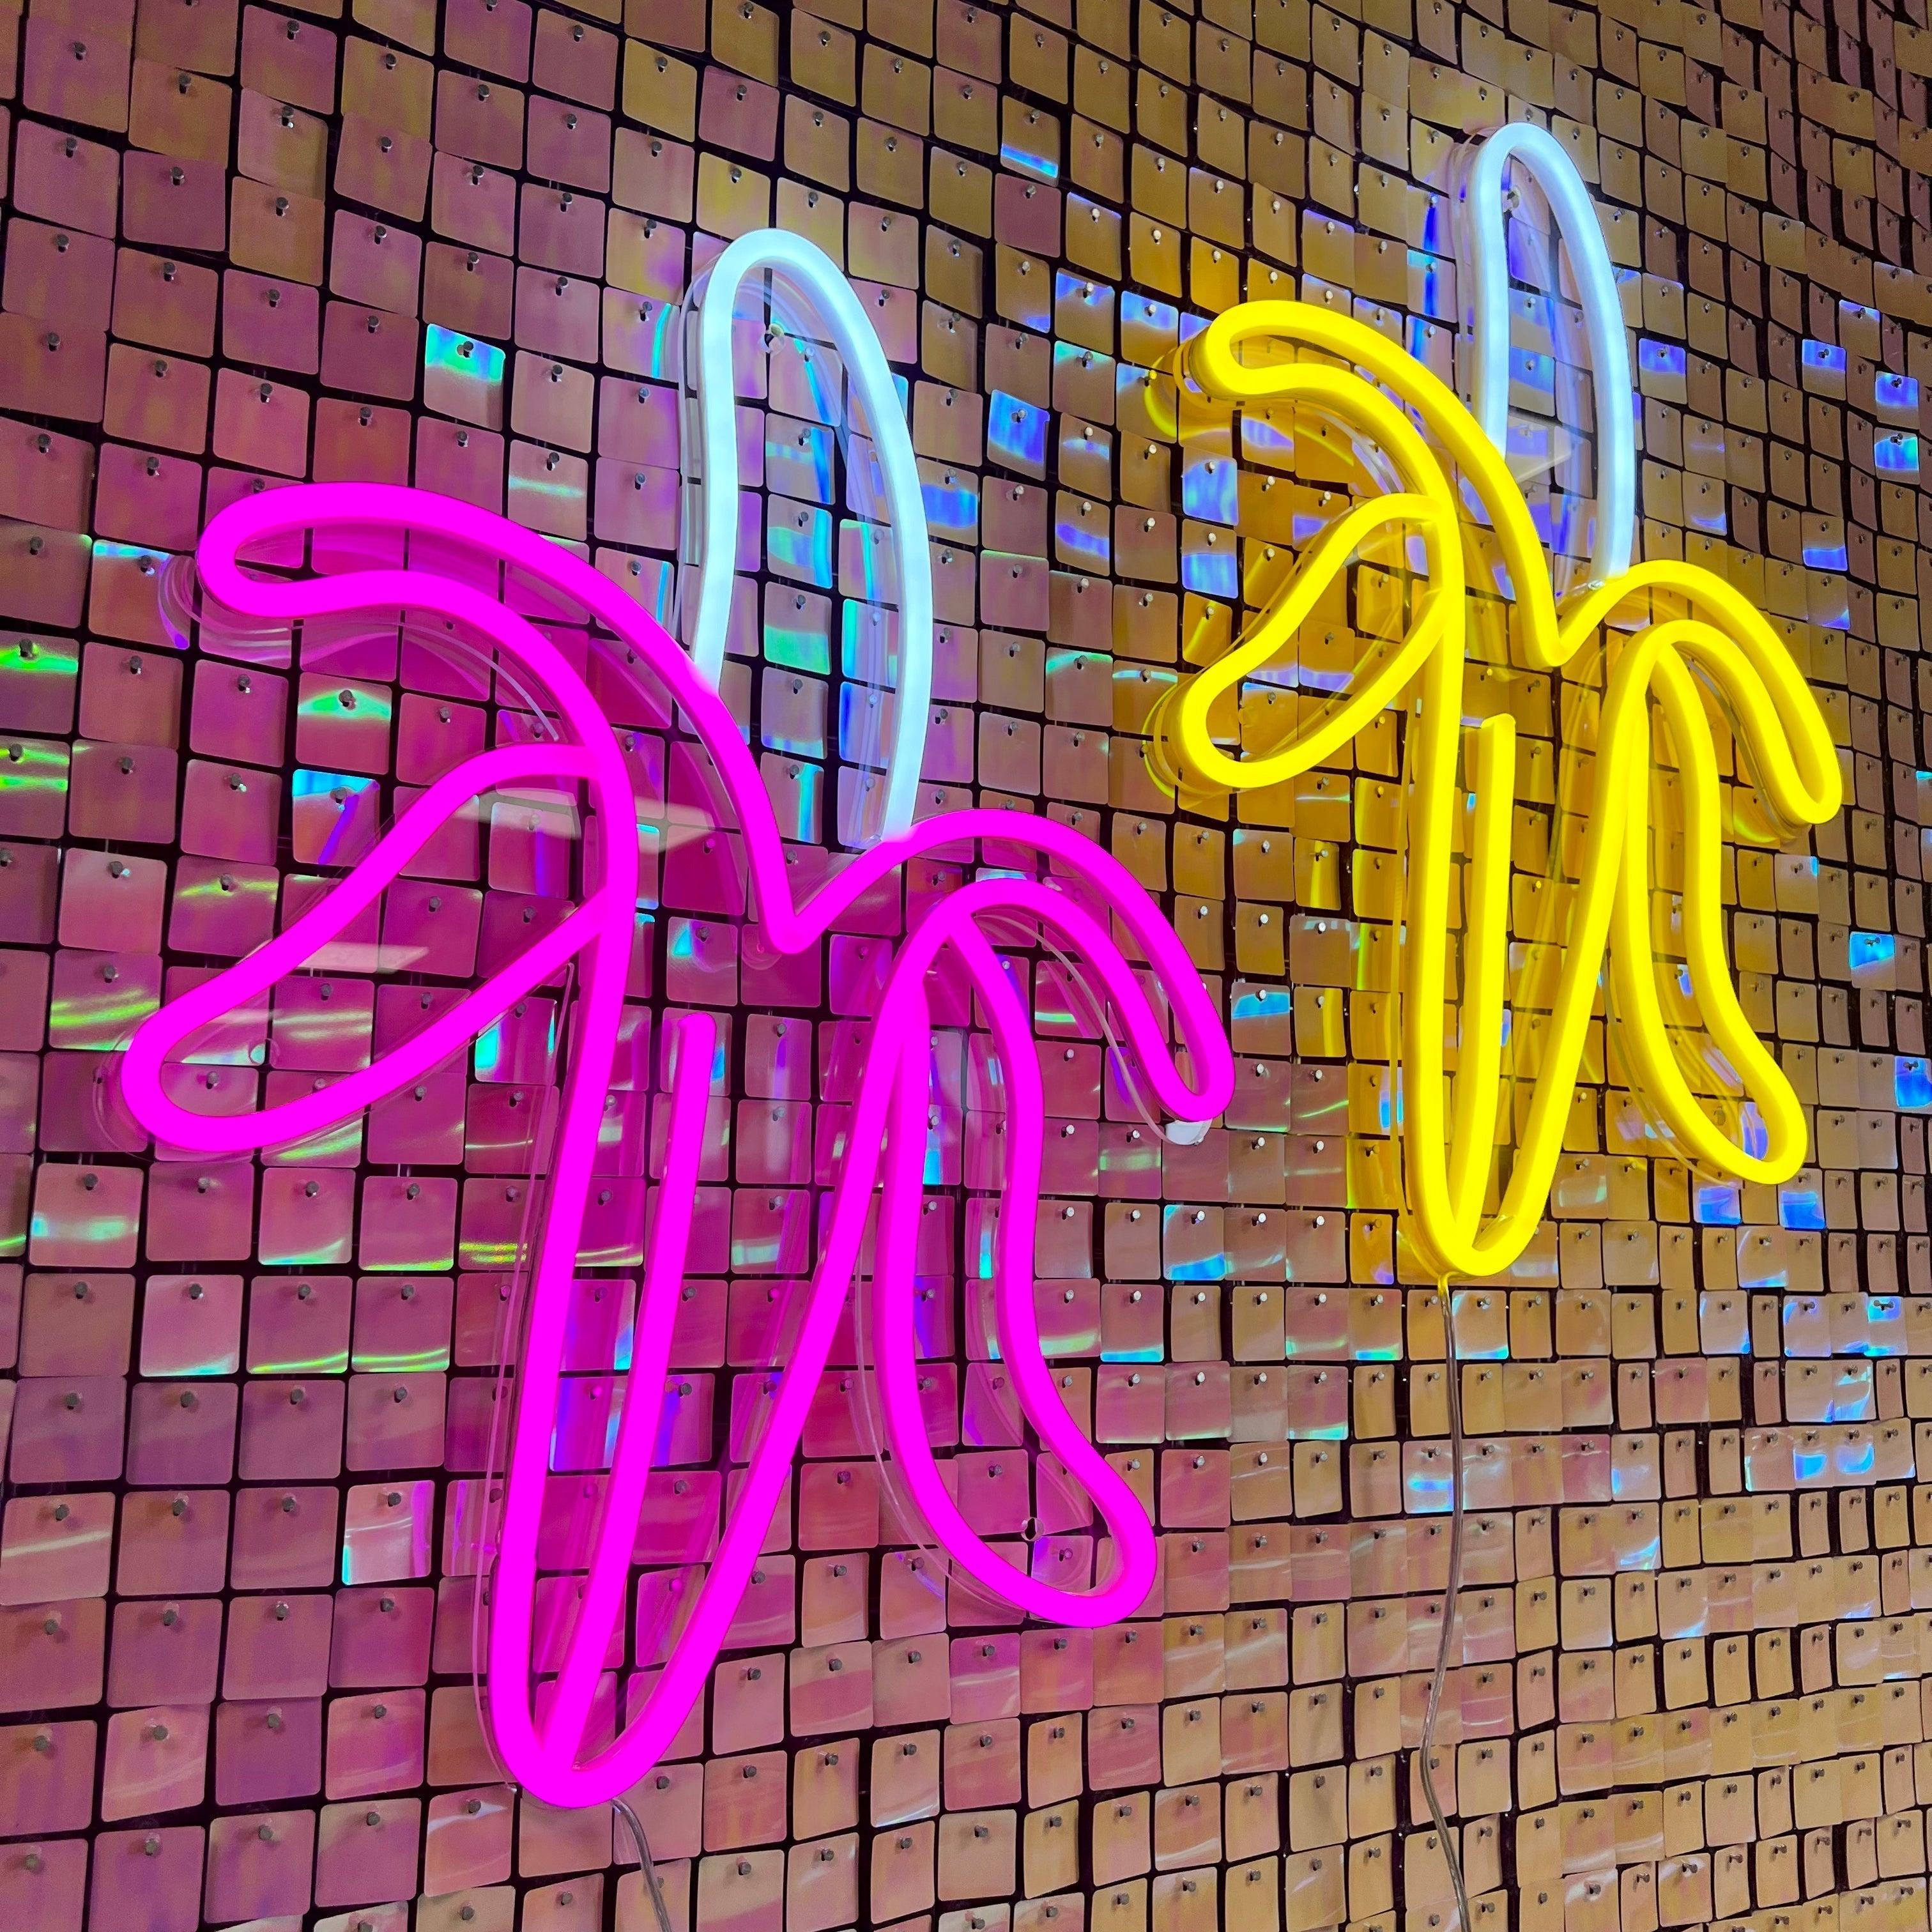 Gi et friskt pust til ditt rom med 'banan' led neonskilt i hot pink. Dette lekne neonskiltet kombinerer stil med humor og lyser opp ethvert rom med sin varme glød. En stilfull dekorasjon som garantert vil tiltrekke oppmerksomhet.